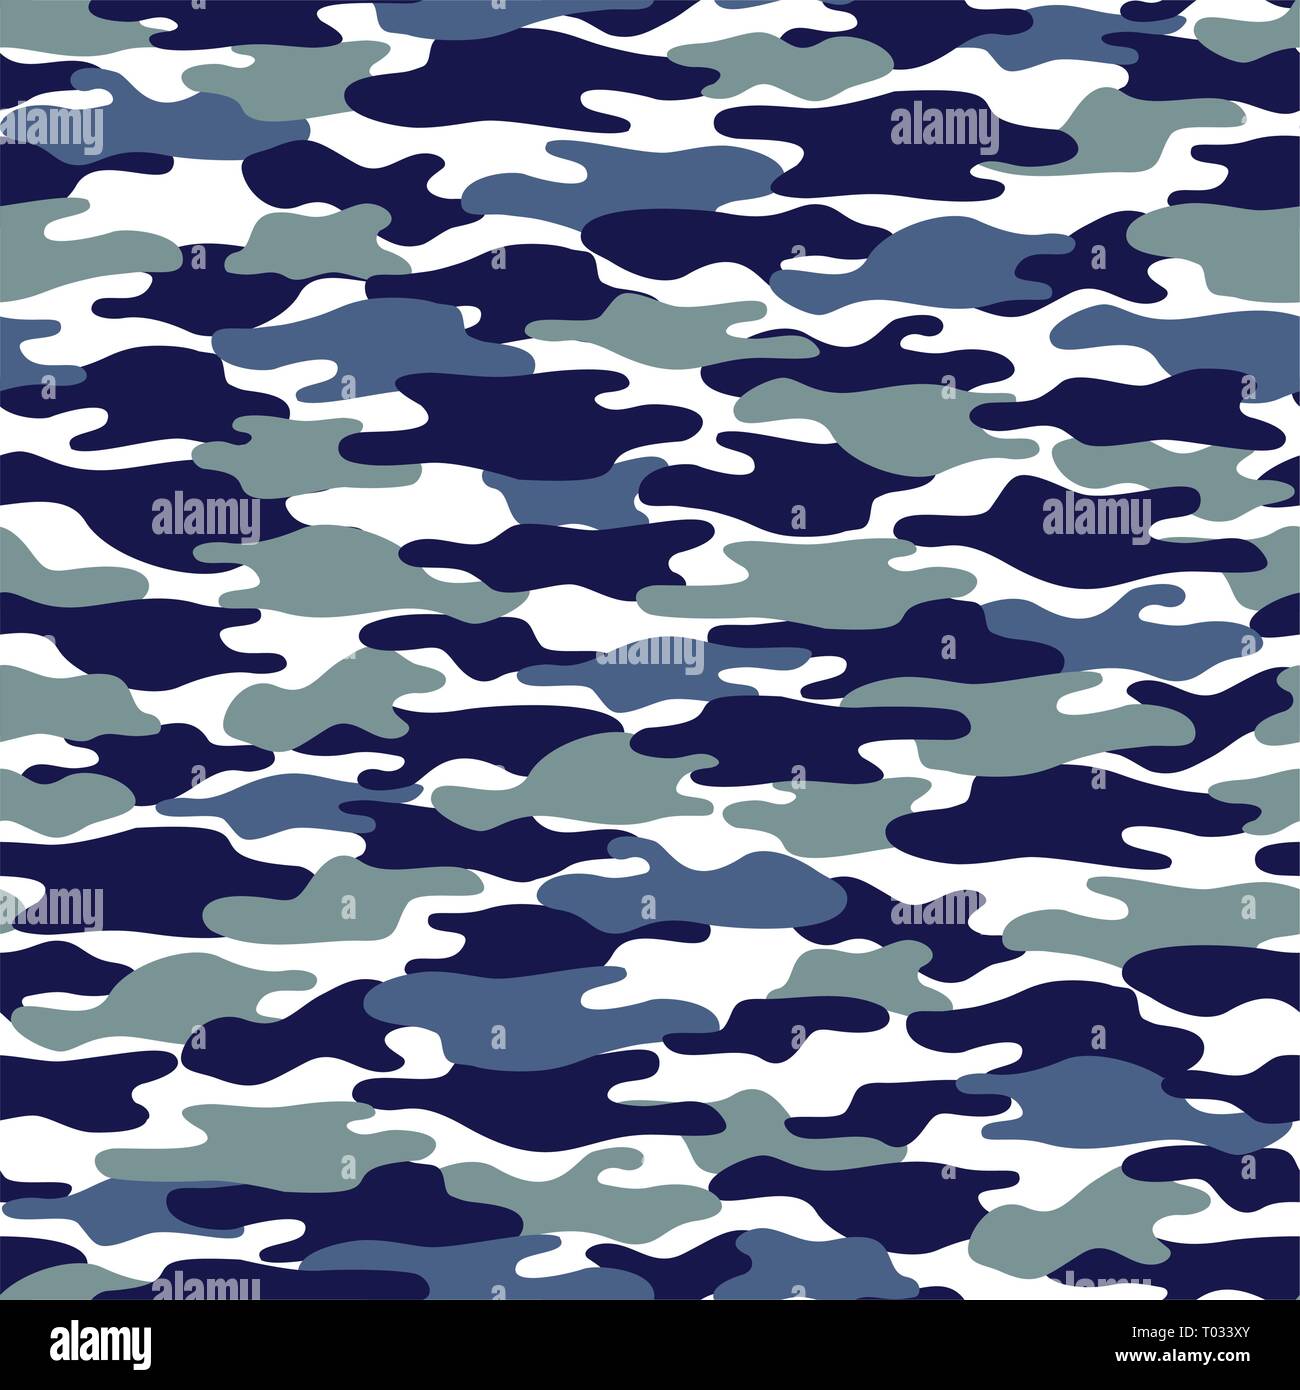 Textur militärische Tarnung nahtlose Muster in Blau und Grau. kleidungsstil Maskierung camo Stock Vektor